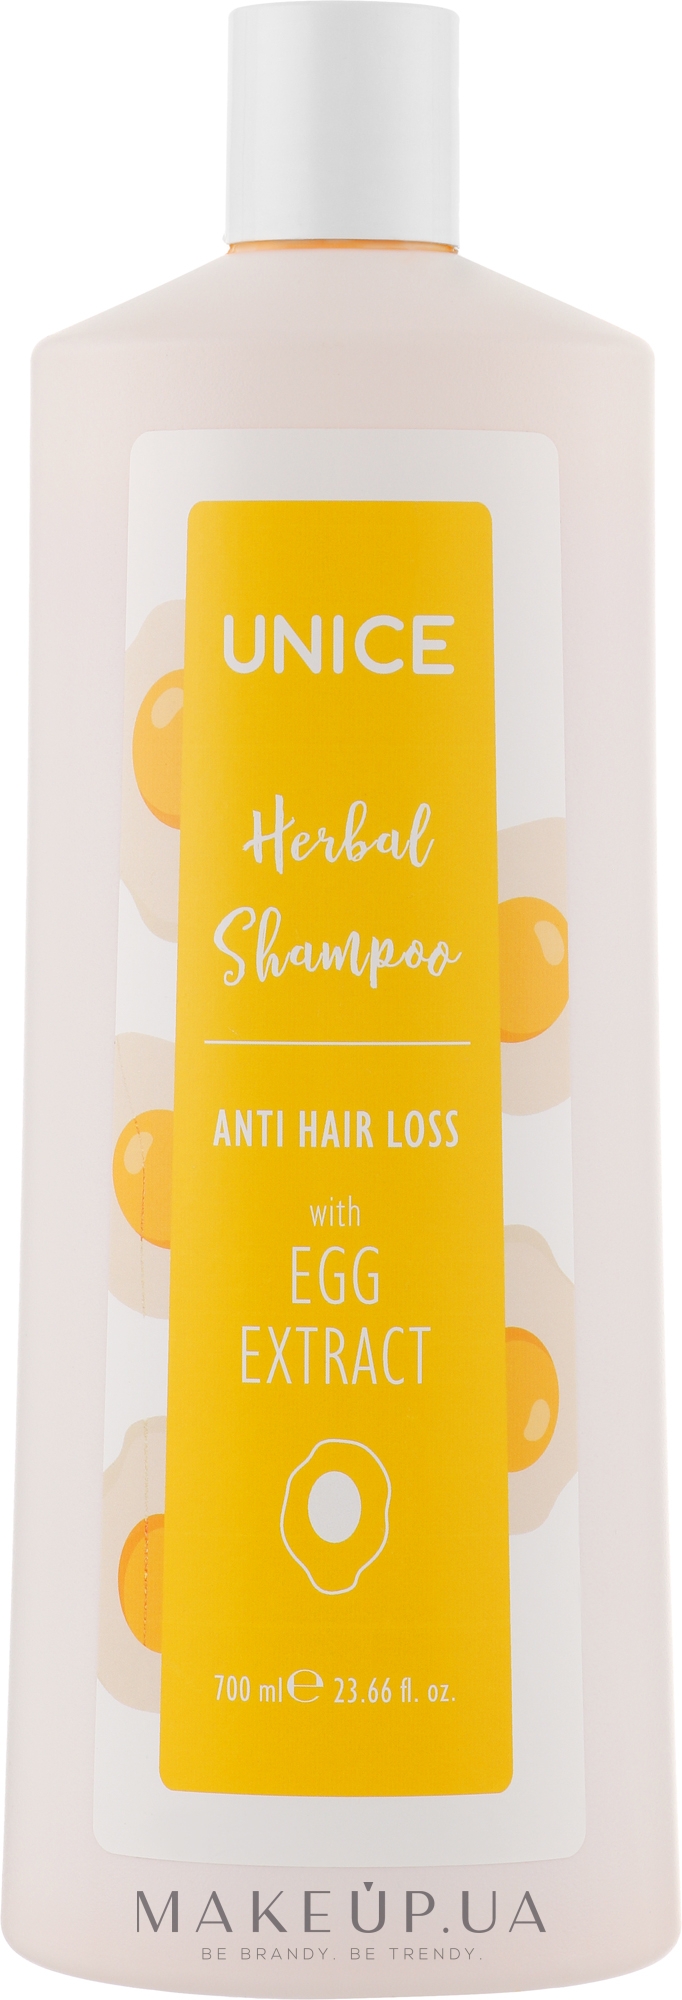 Зміцнювальний яєчний шампунь - Unice Herbal Shampoo Anti Hair Loss — фото 700ml